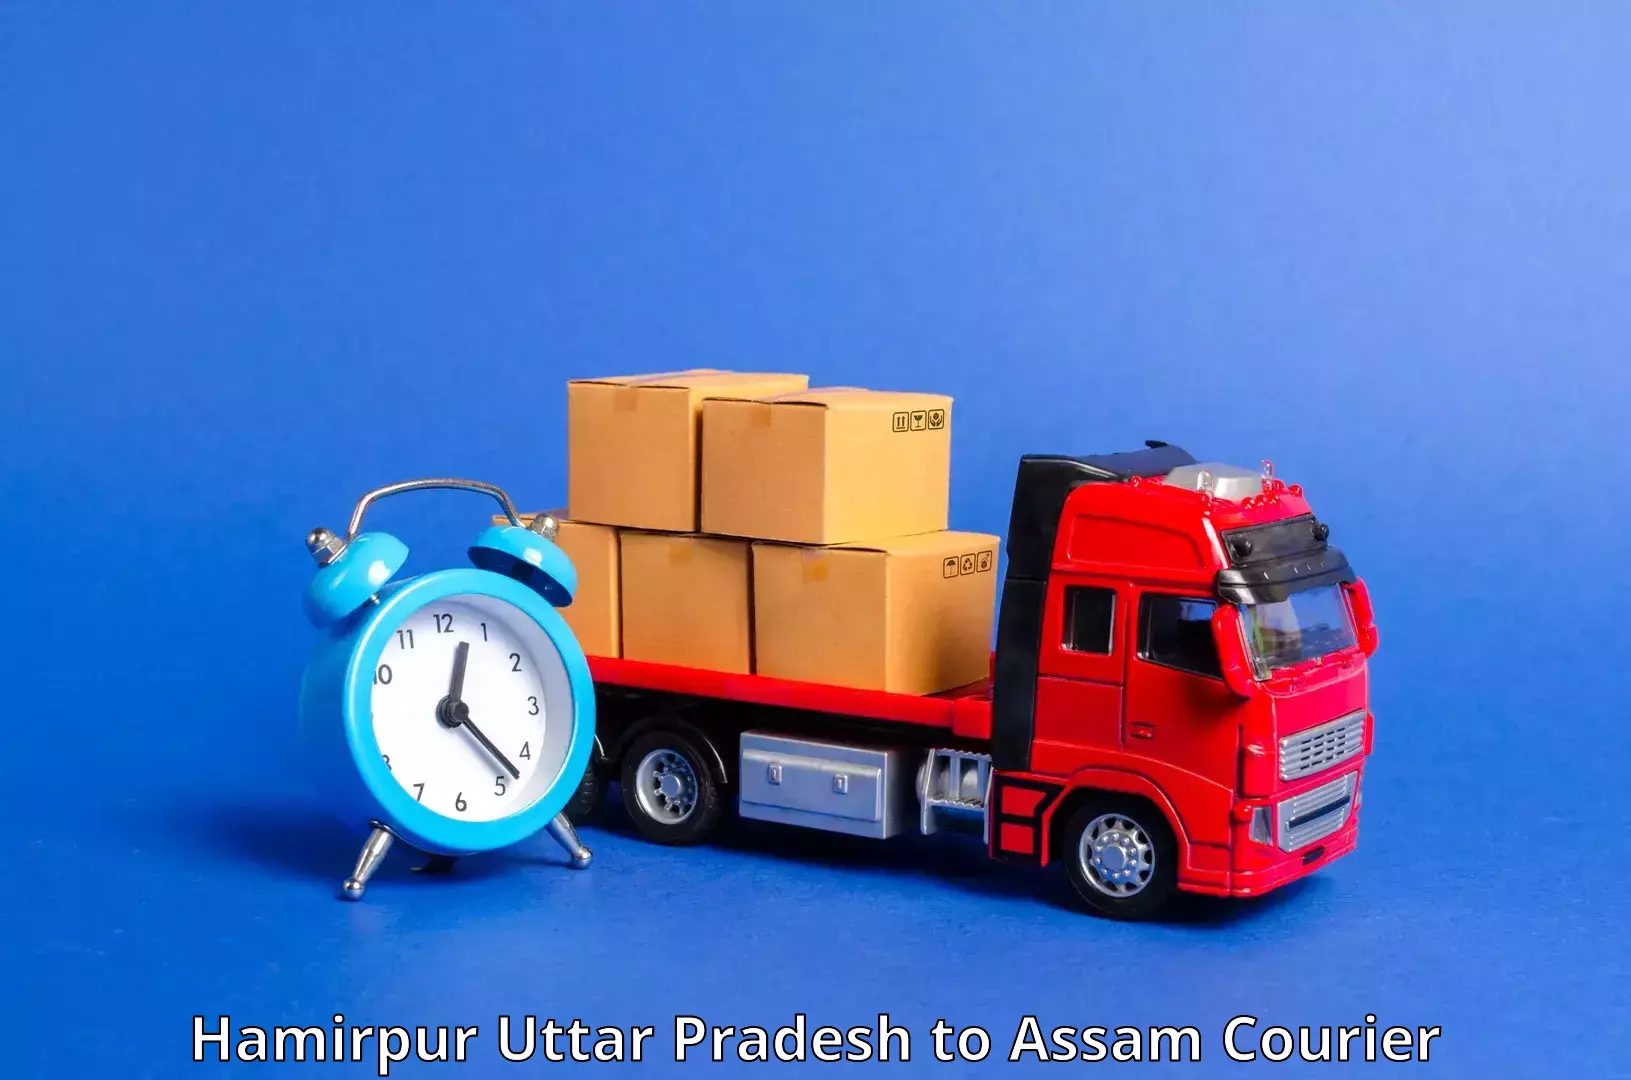 Affordable parcel service Hamirpur Uttar Pradesh to Balapara